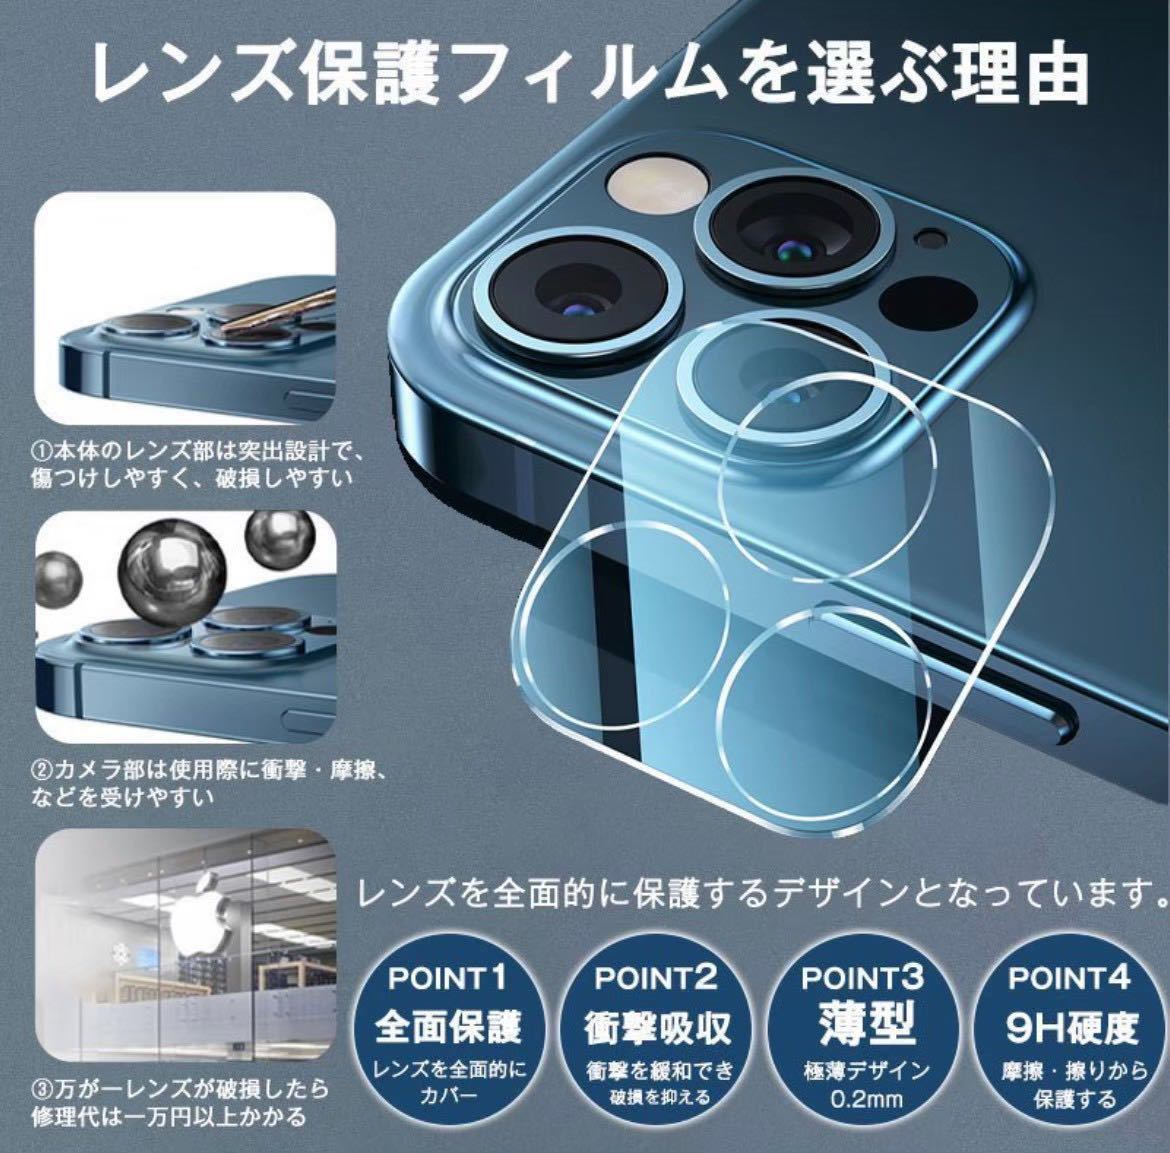 【iPhone12ProMax】新10D全画面ガラスフィルムとカメラ保護フィルム